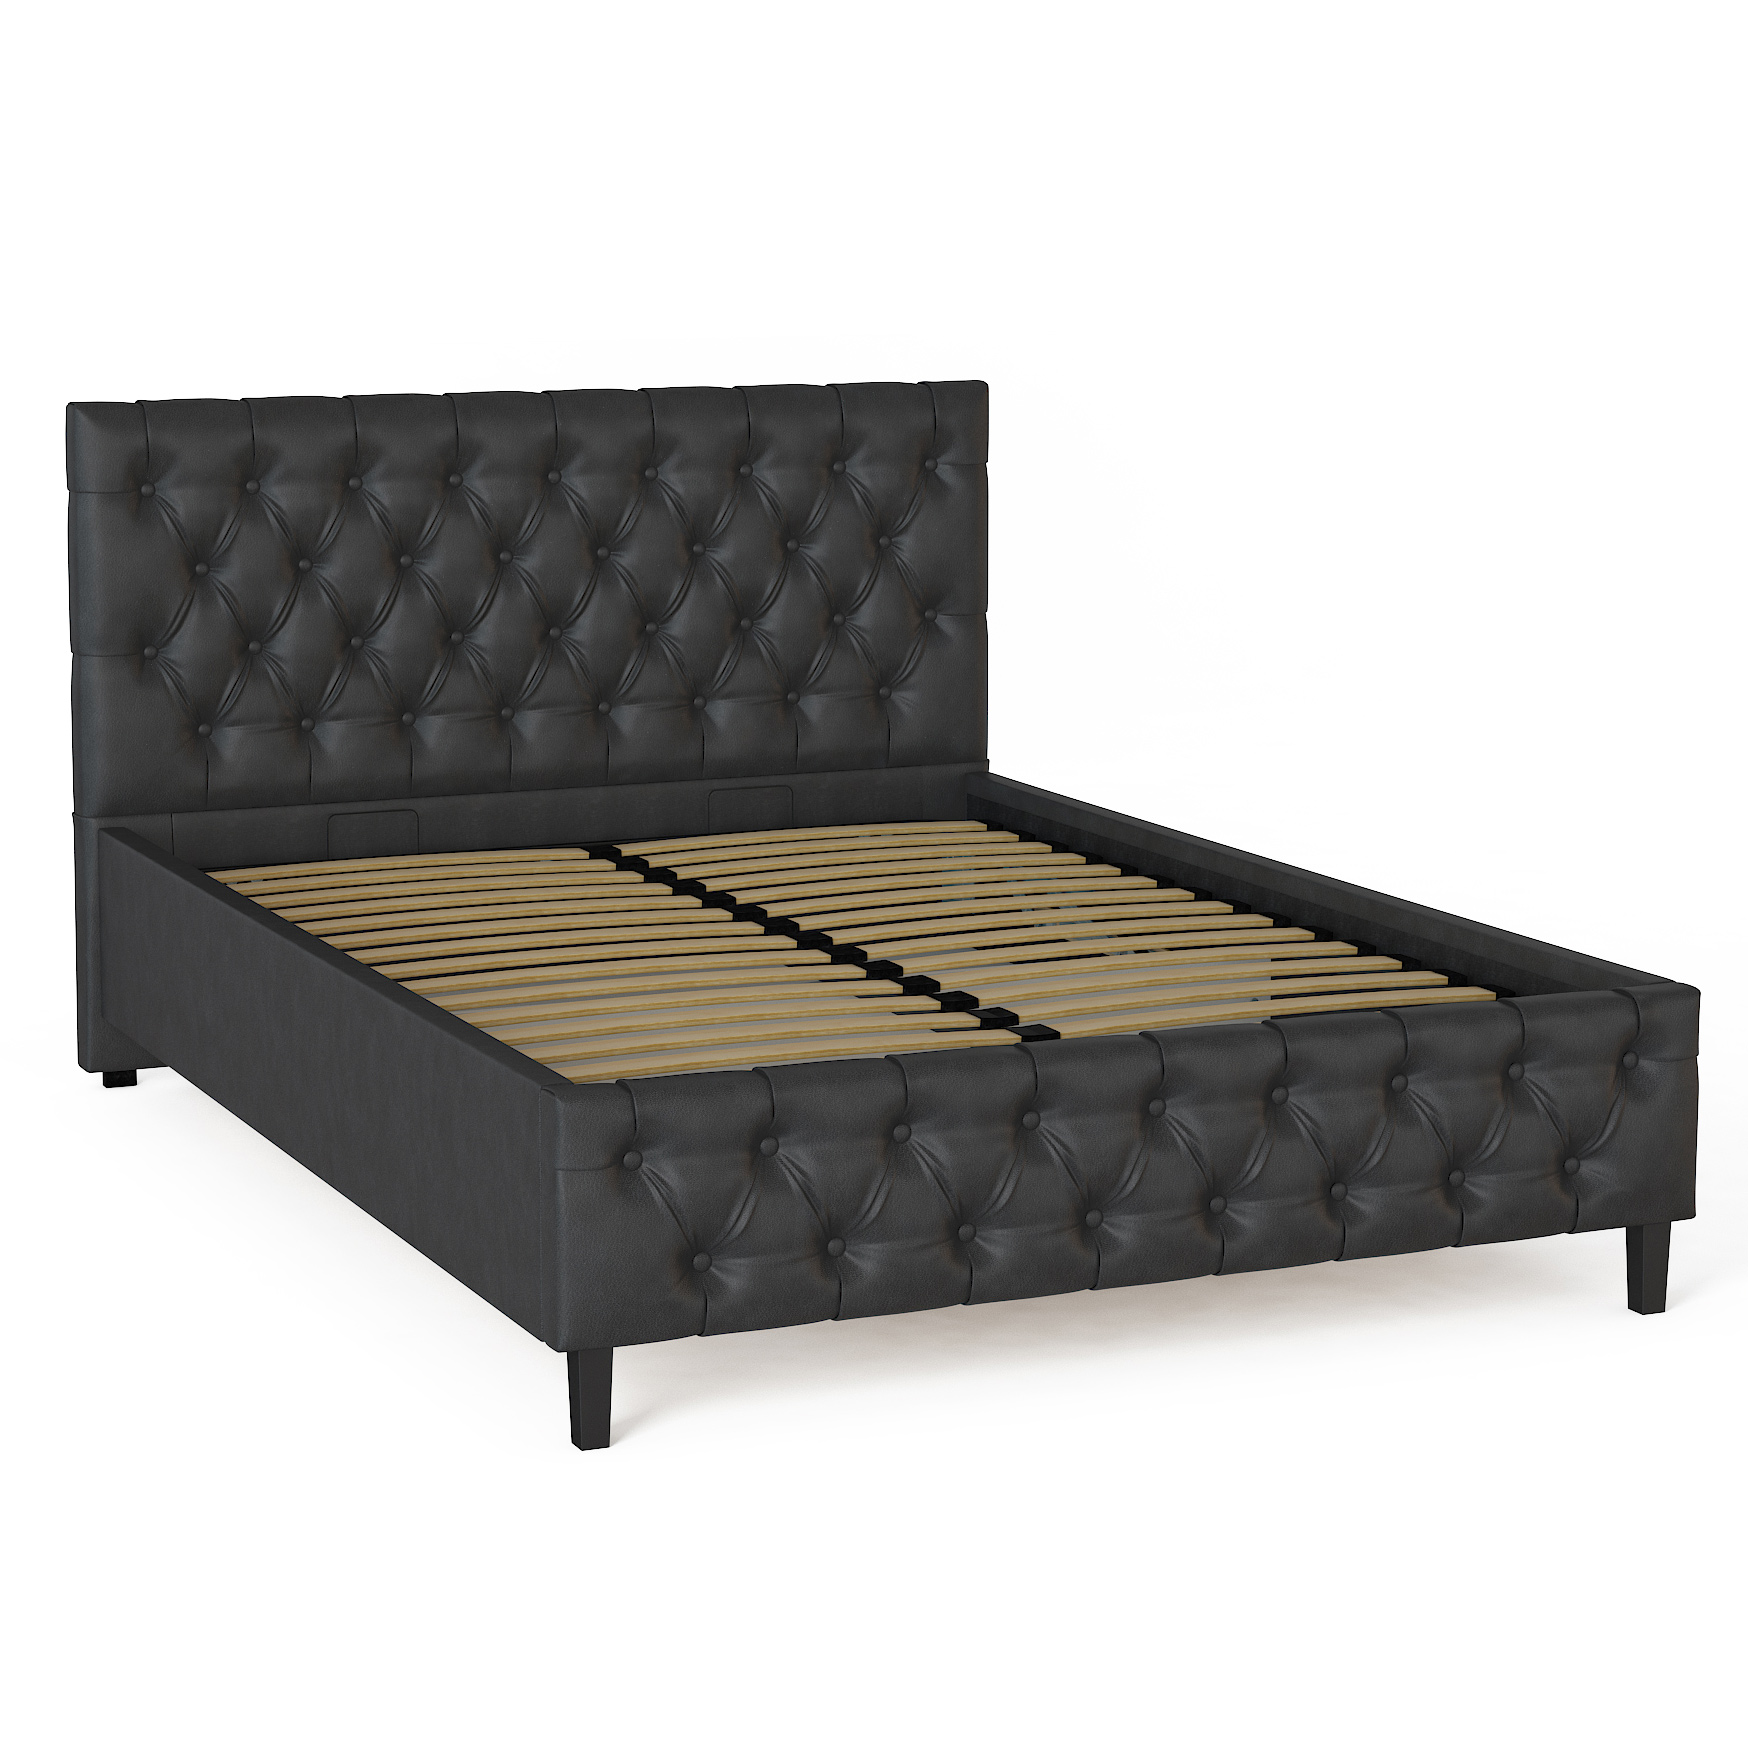 Кровать Смк-Мебель Джови 730 140х200 см, цвет черный, размер 140х200 см - фото 1